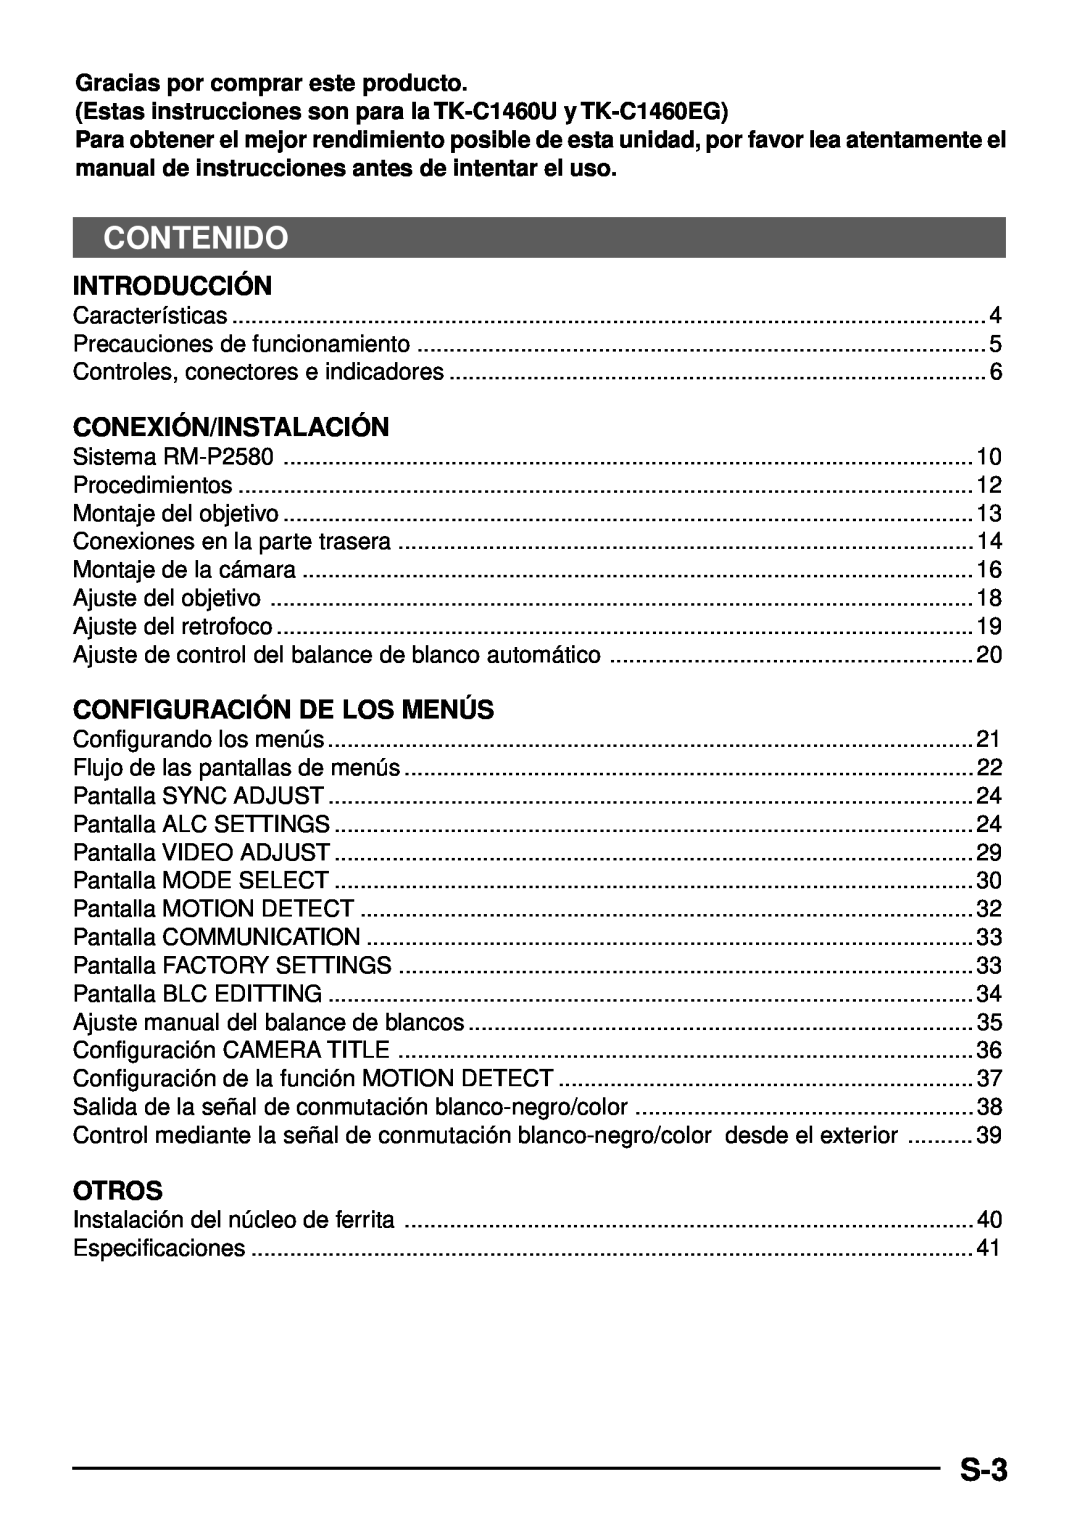 JVC TK-C1460 manual Contenido, Introducció N, Conexió N/Instalació N, Configuració N De Los Menú S, Otros 